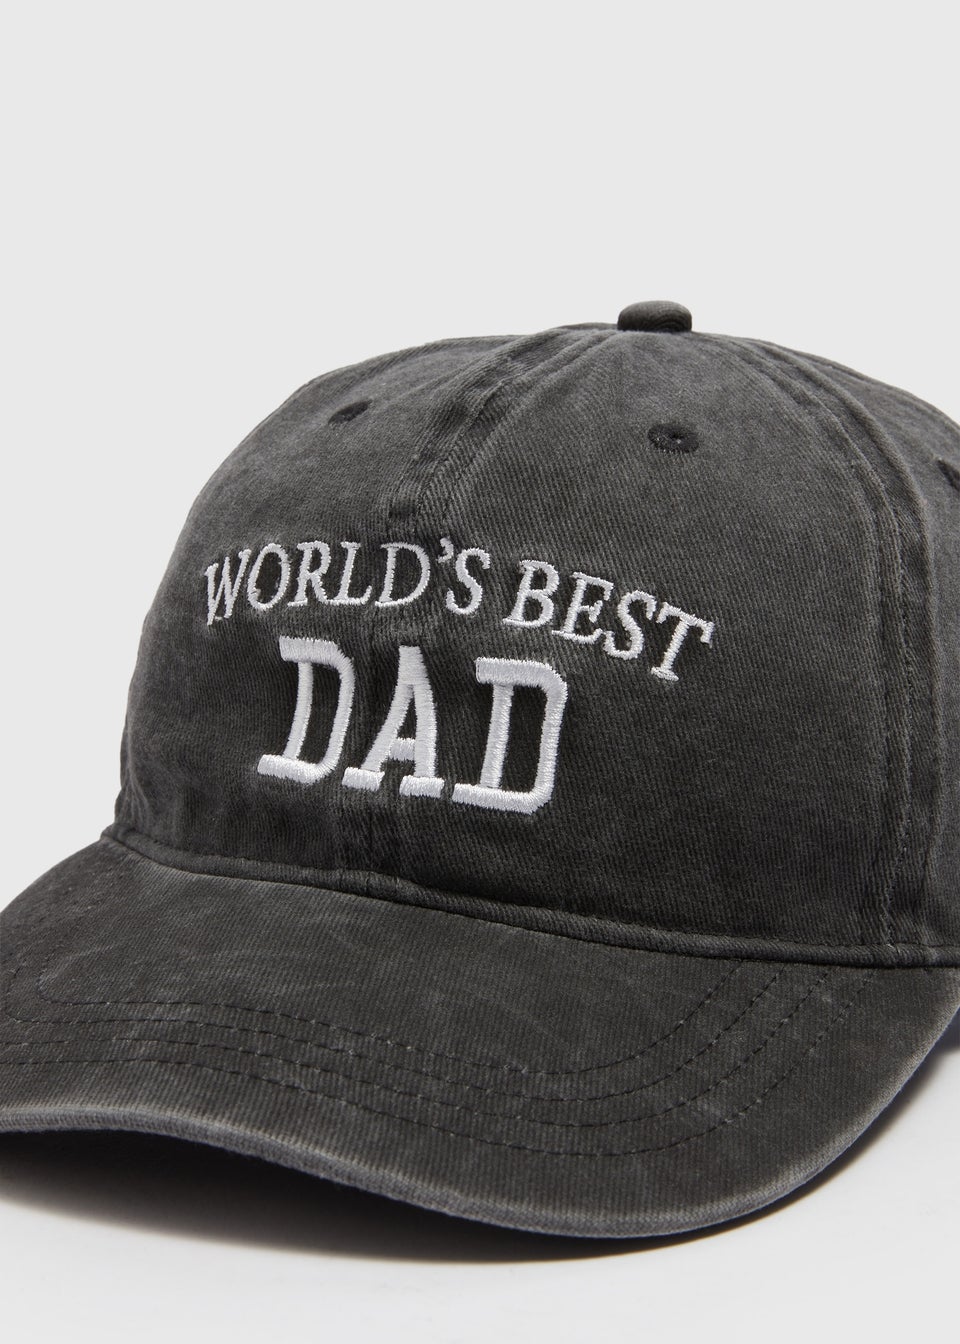 Worlds Best Dad Cap